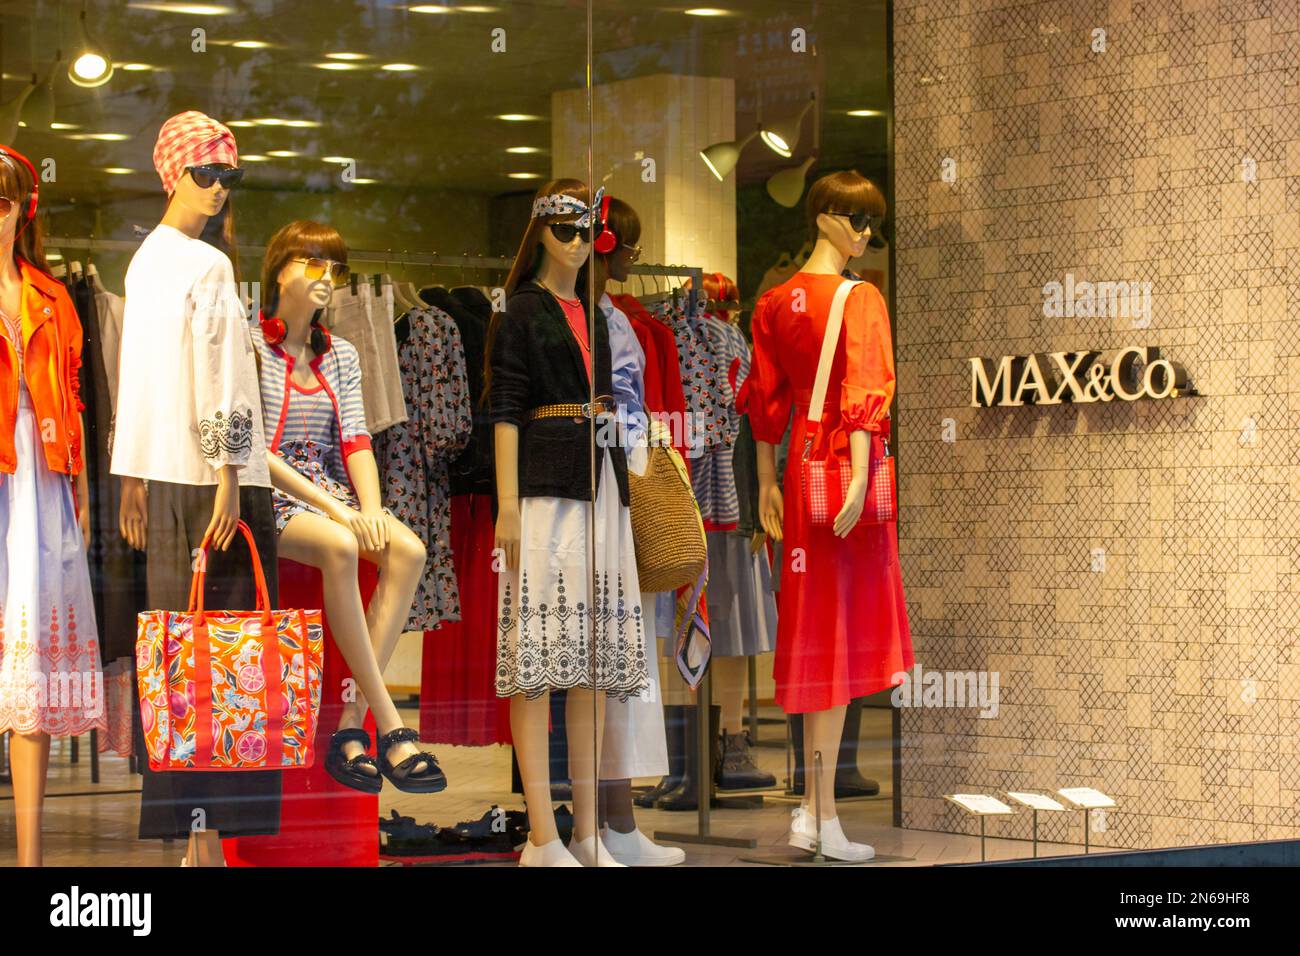 Vetrina del negozio di moda Max and Co, boutique di abbigliamento.  Manichini femminili Foto stock - Alamy